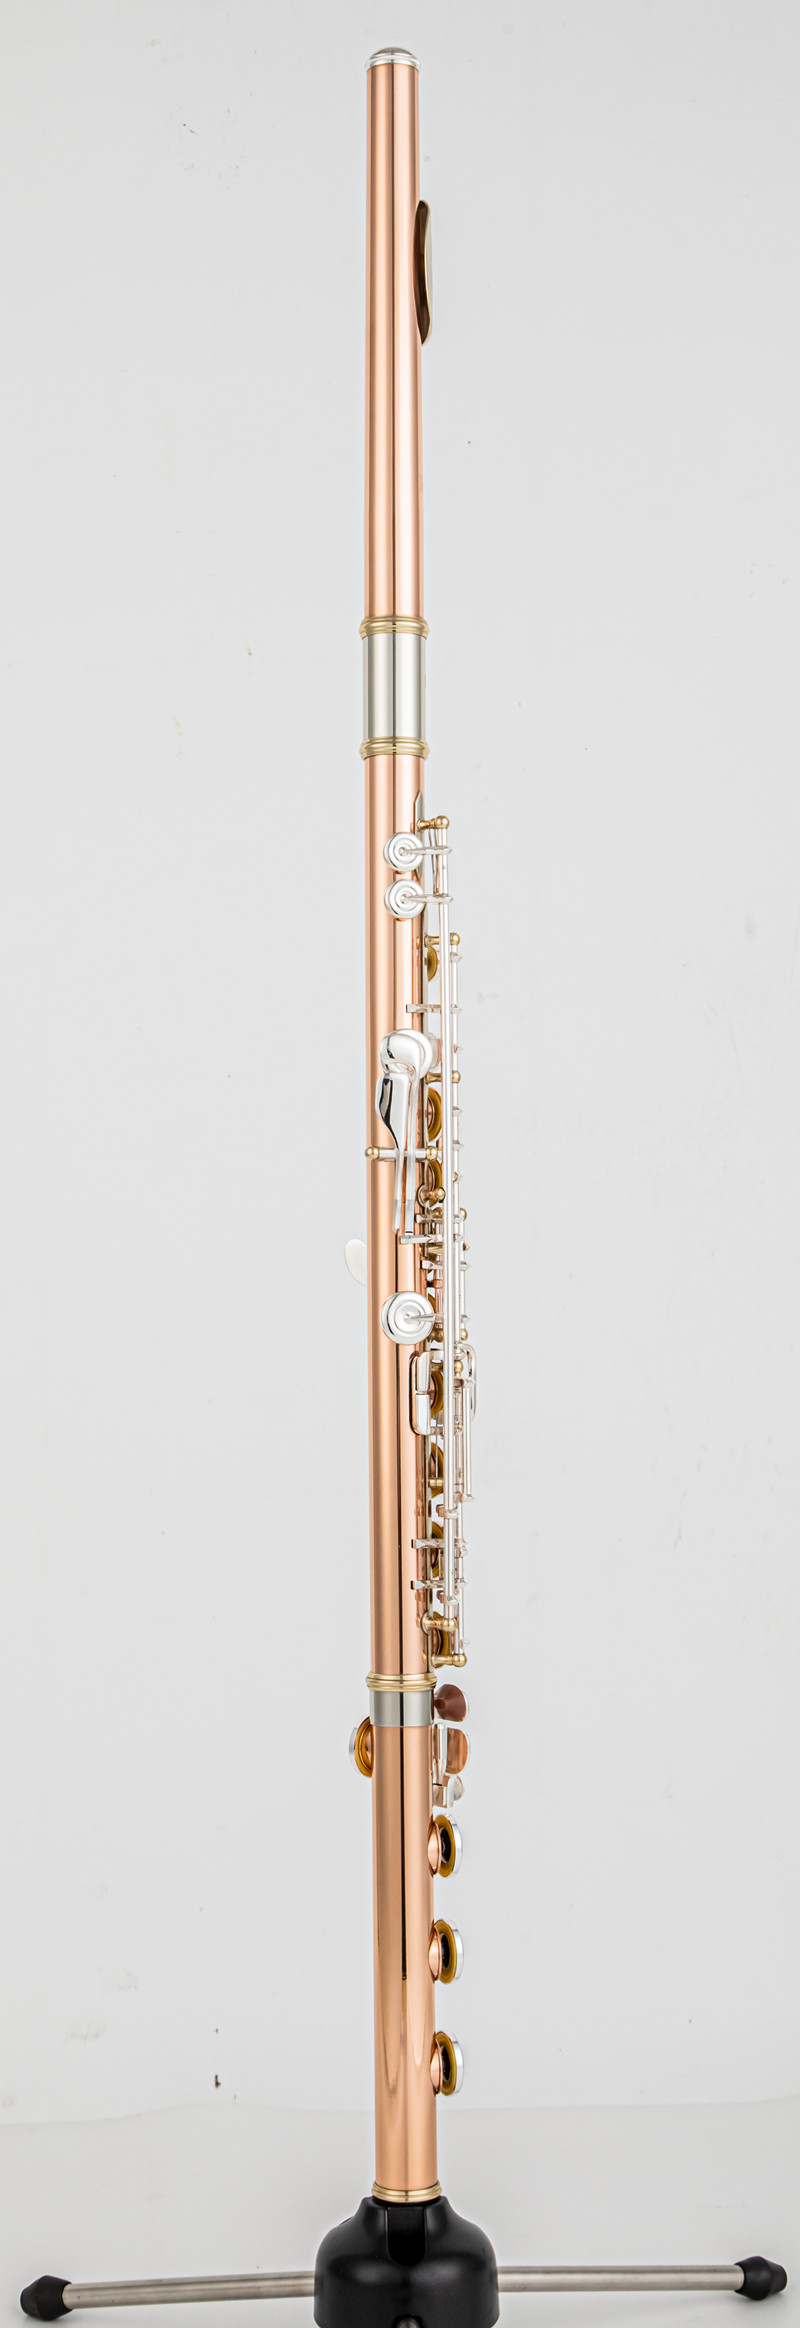 PF-8950ES Fluit Hoge kwaliteit fosforbrons 17-sleutel fluit open gat